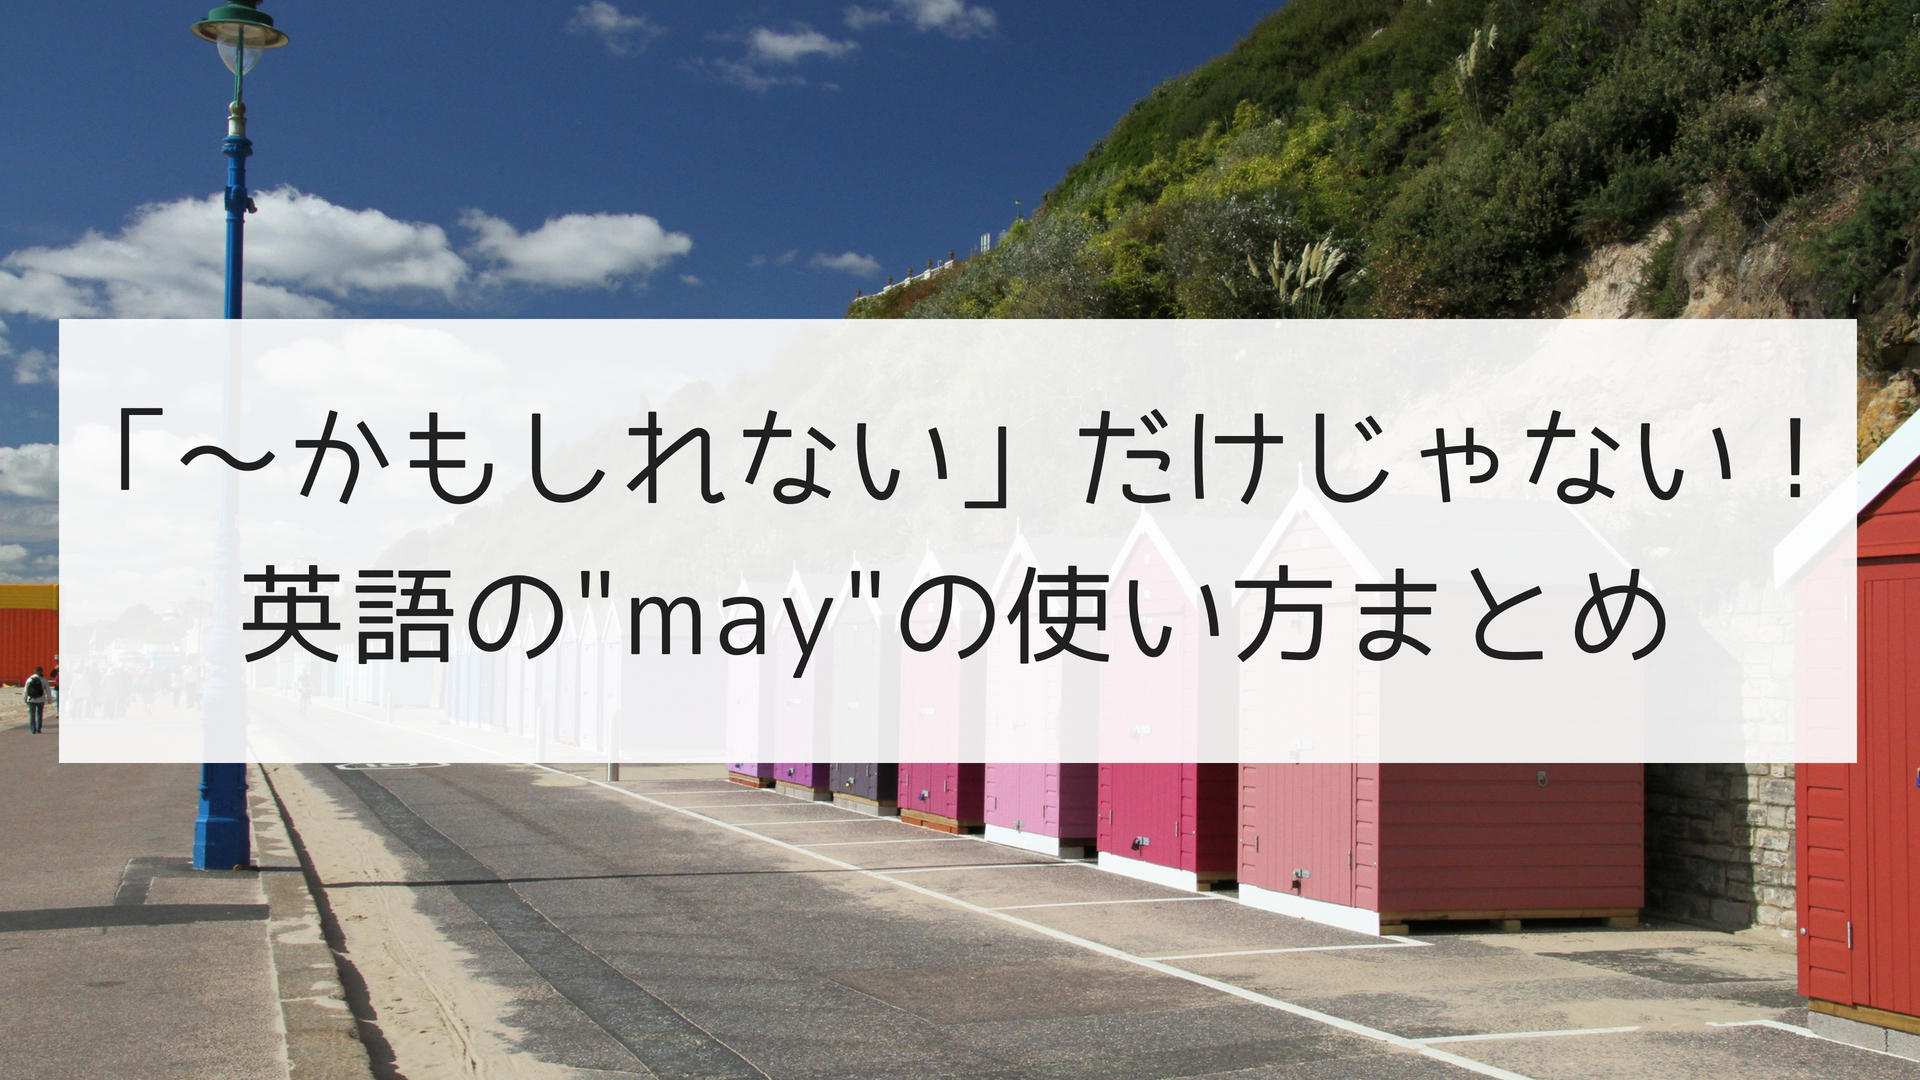 かもしれない だけじゃない 英語の May の使い方まとめ 日本語教師の英語講座